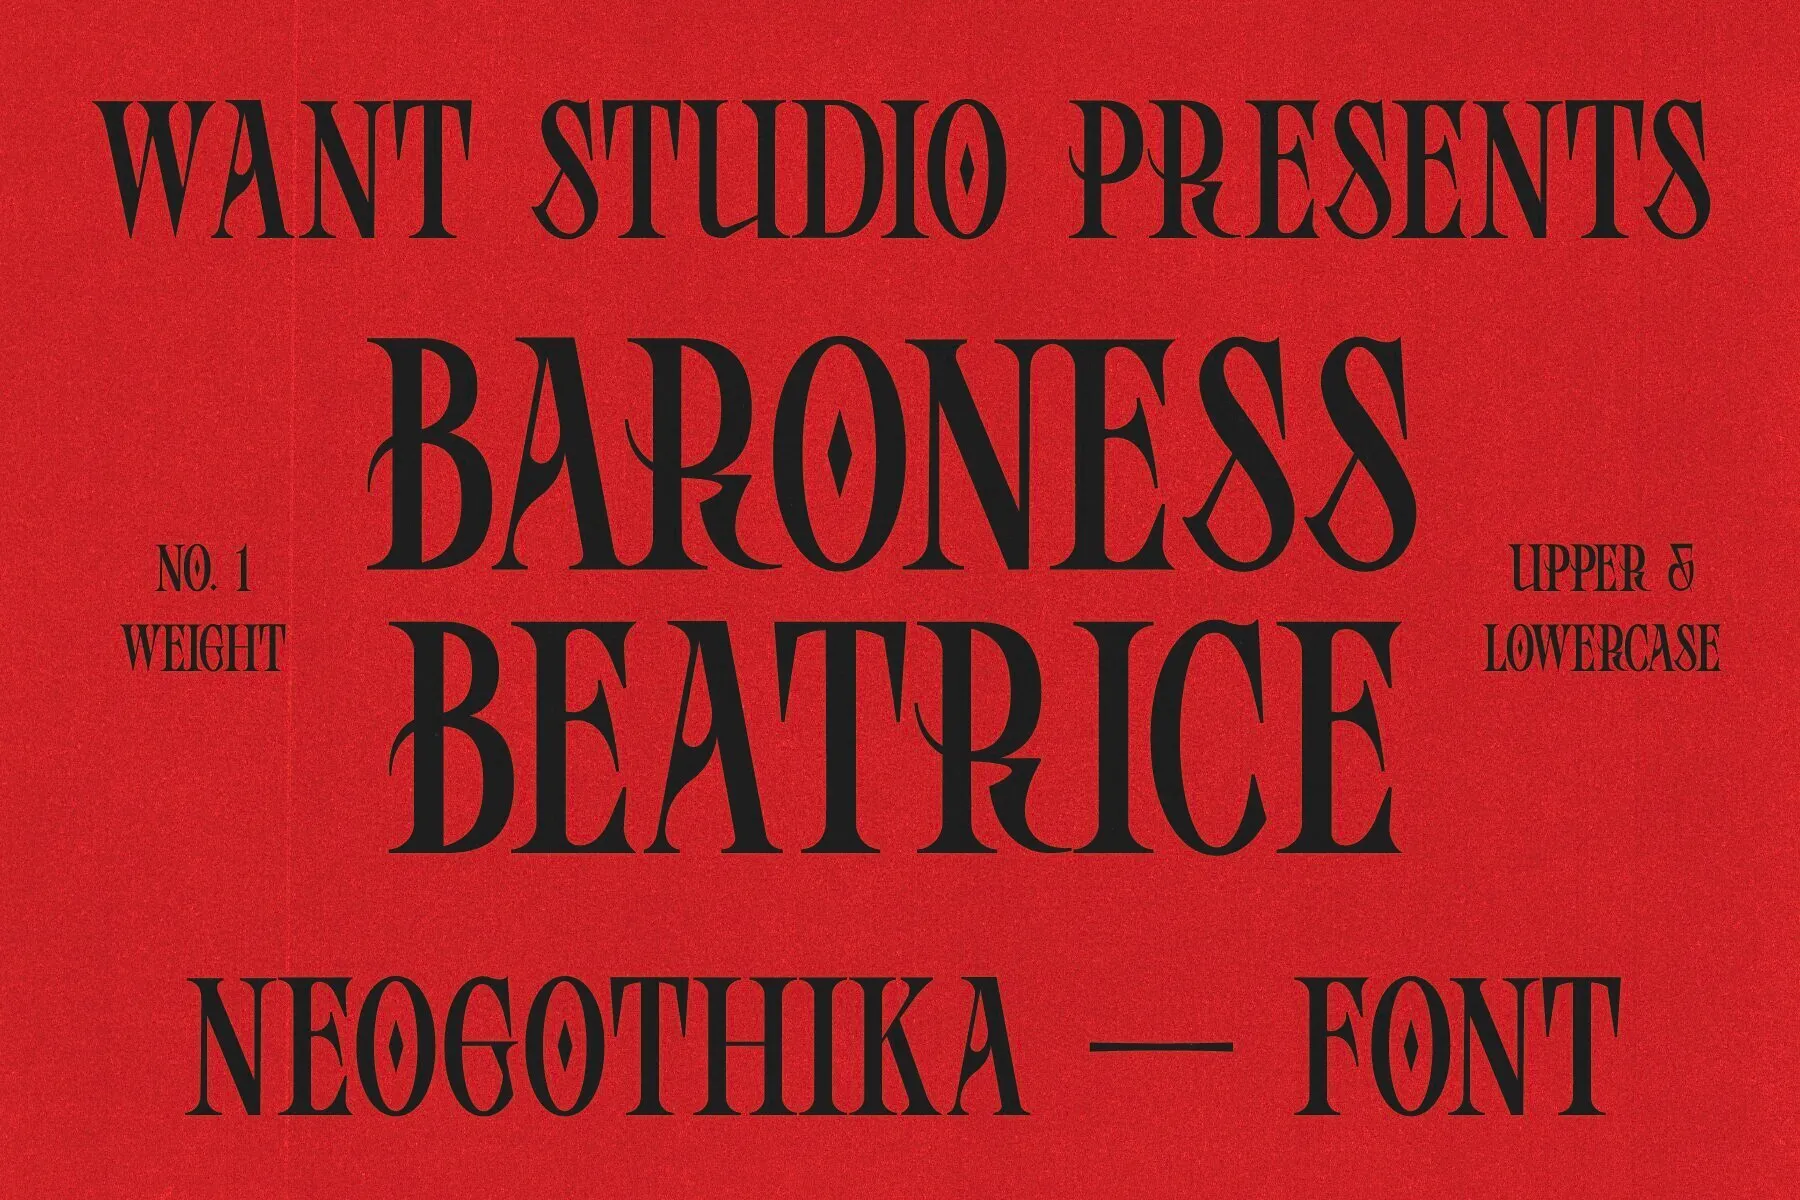 Baroness Beatrice